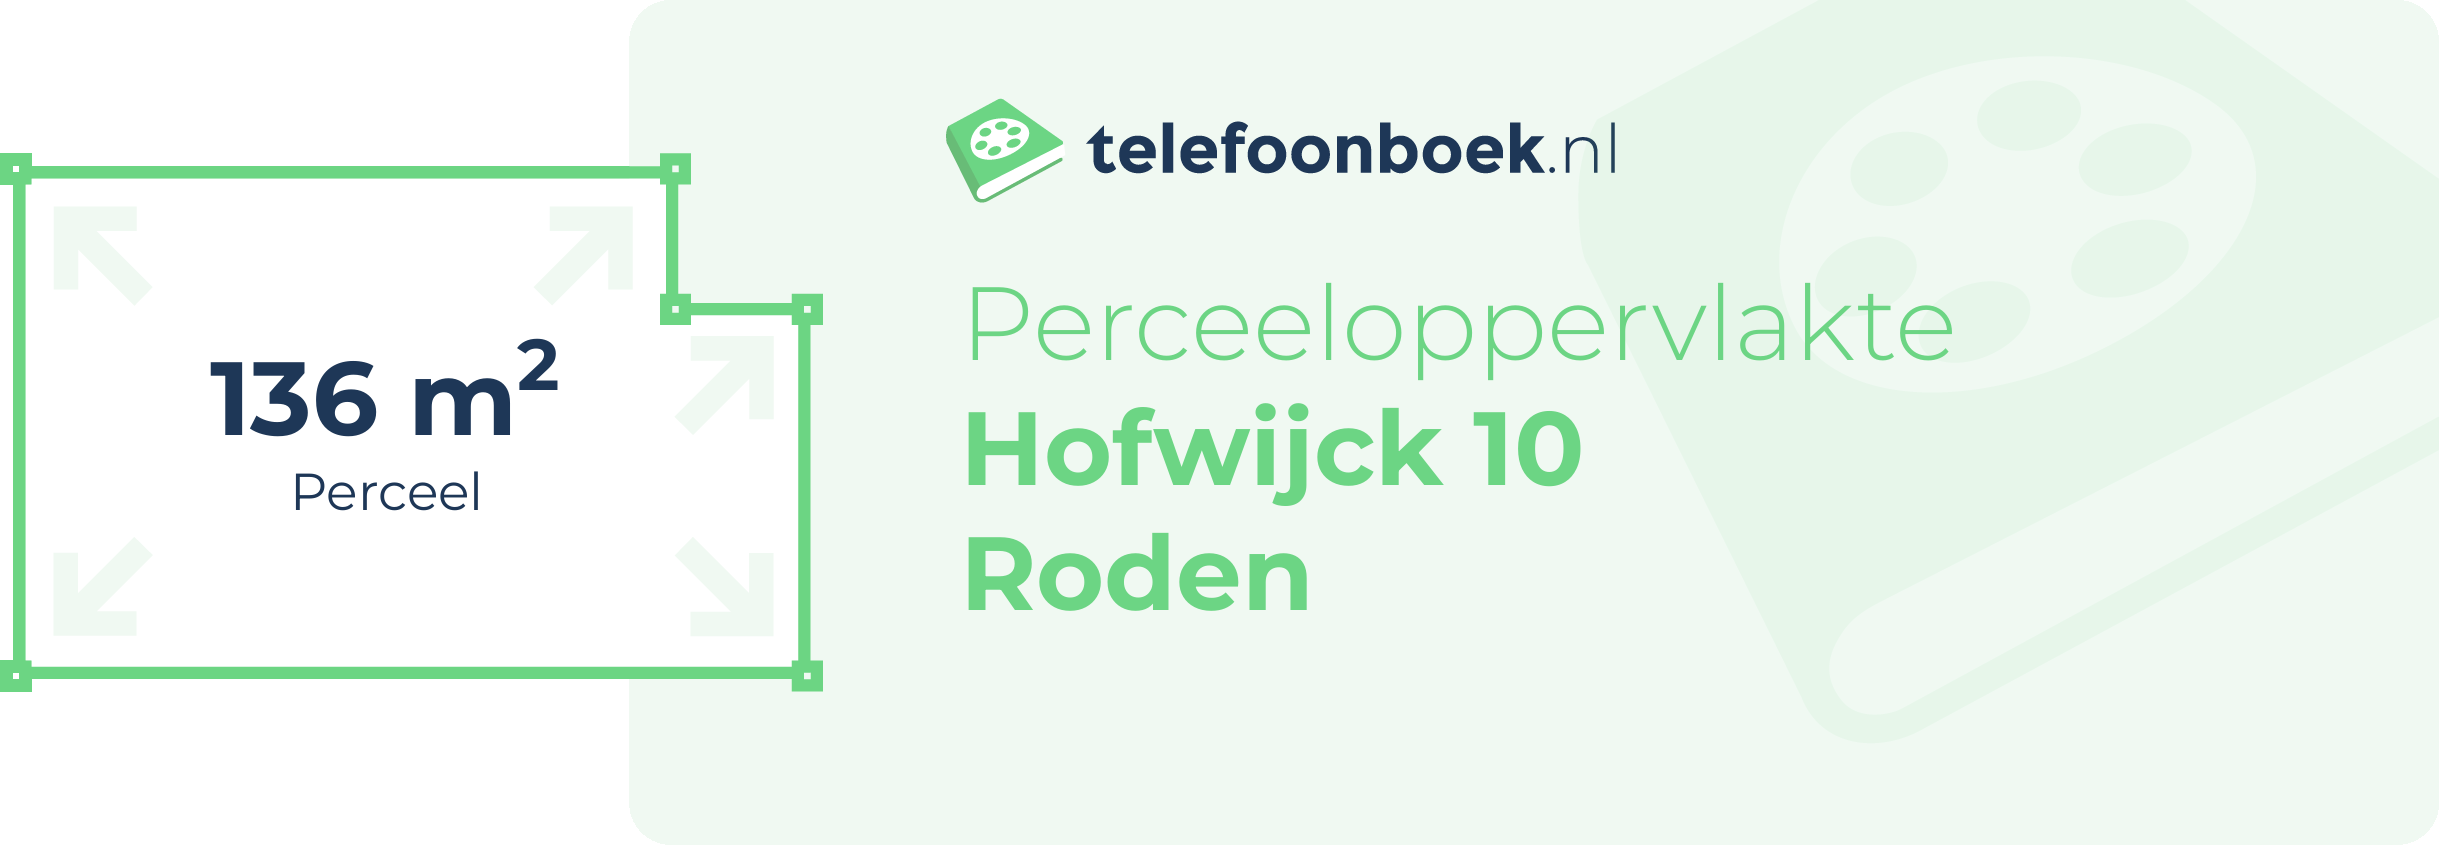 Perceeloppervlakte Hofwijck 10 Roden